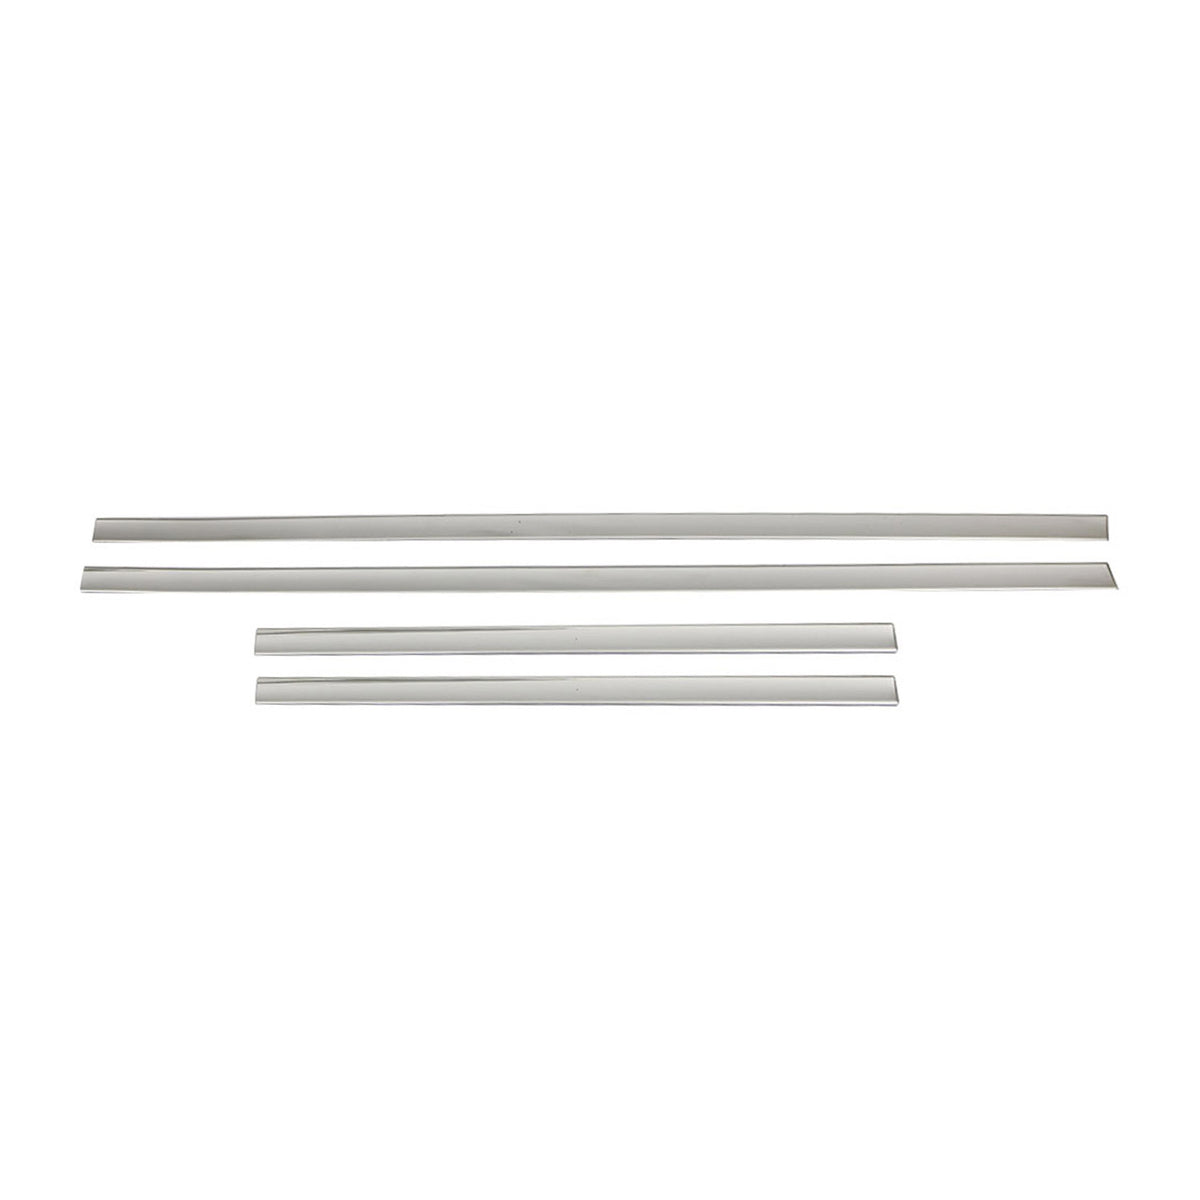 Türschutz Türleiste Seitentürleiste für Ford Galaxy Ecosport Edelstahl Silber 4x